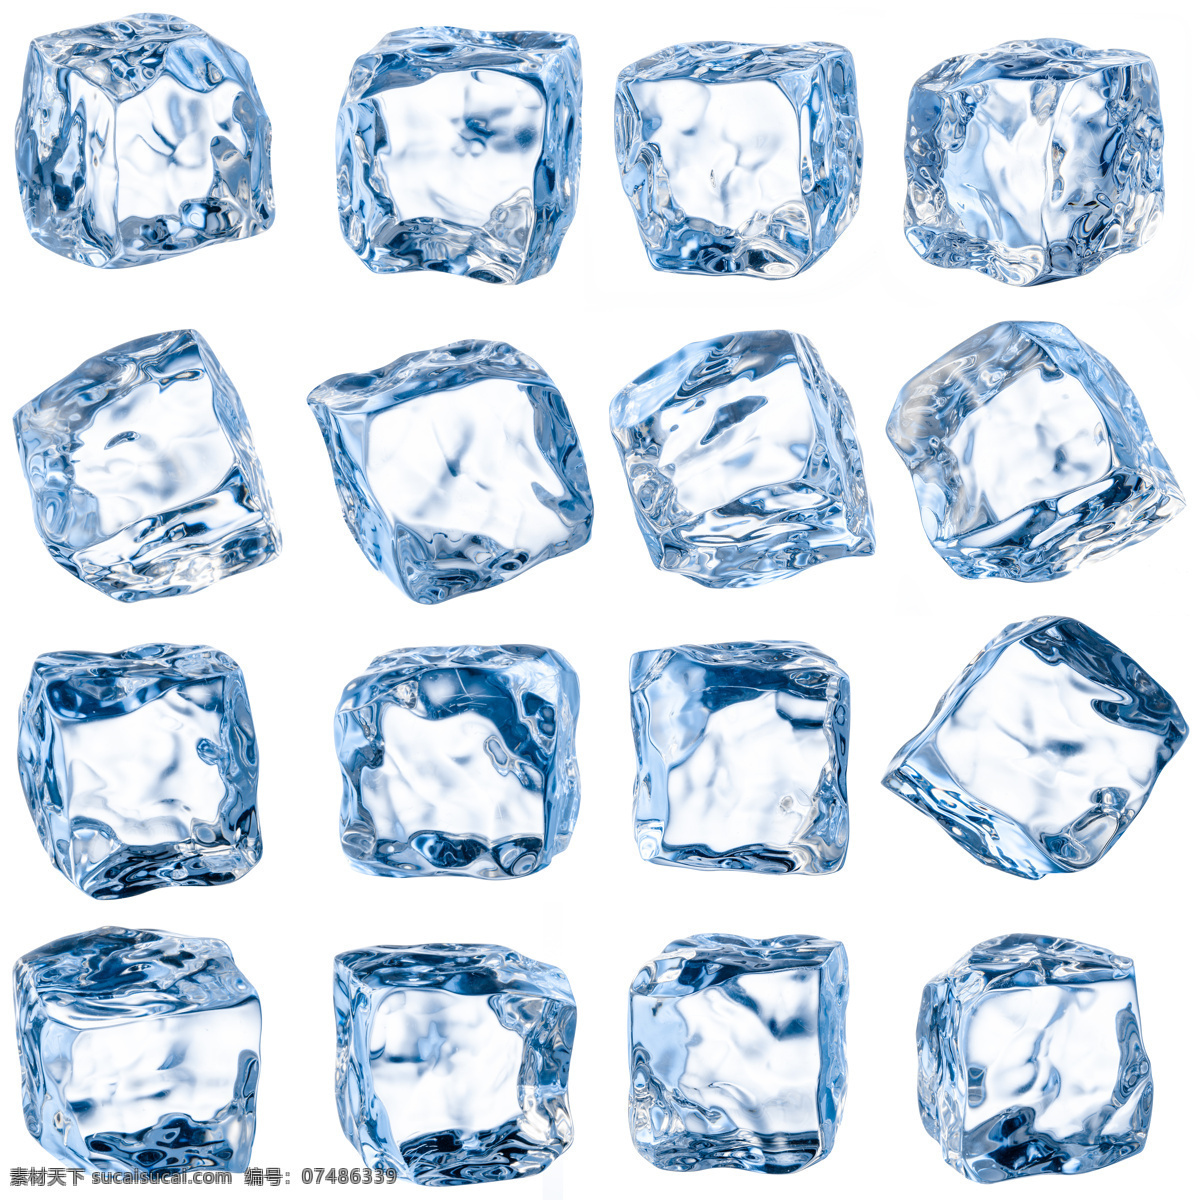 蓝色 晶莹剔透 冰块 碎冰块 几何立体 冷鲜 广告背景 冰块图片 生活百科